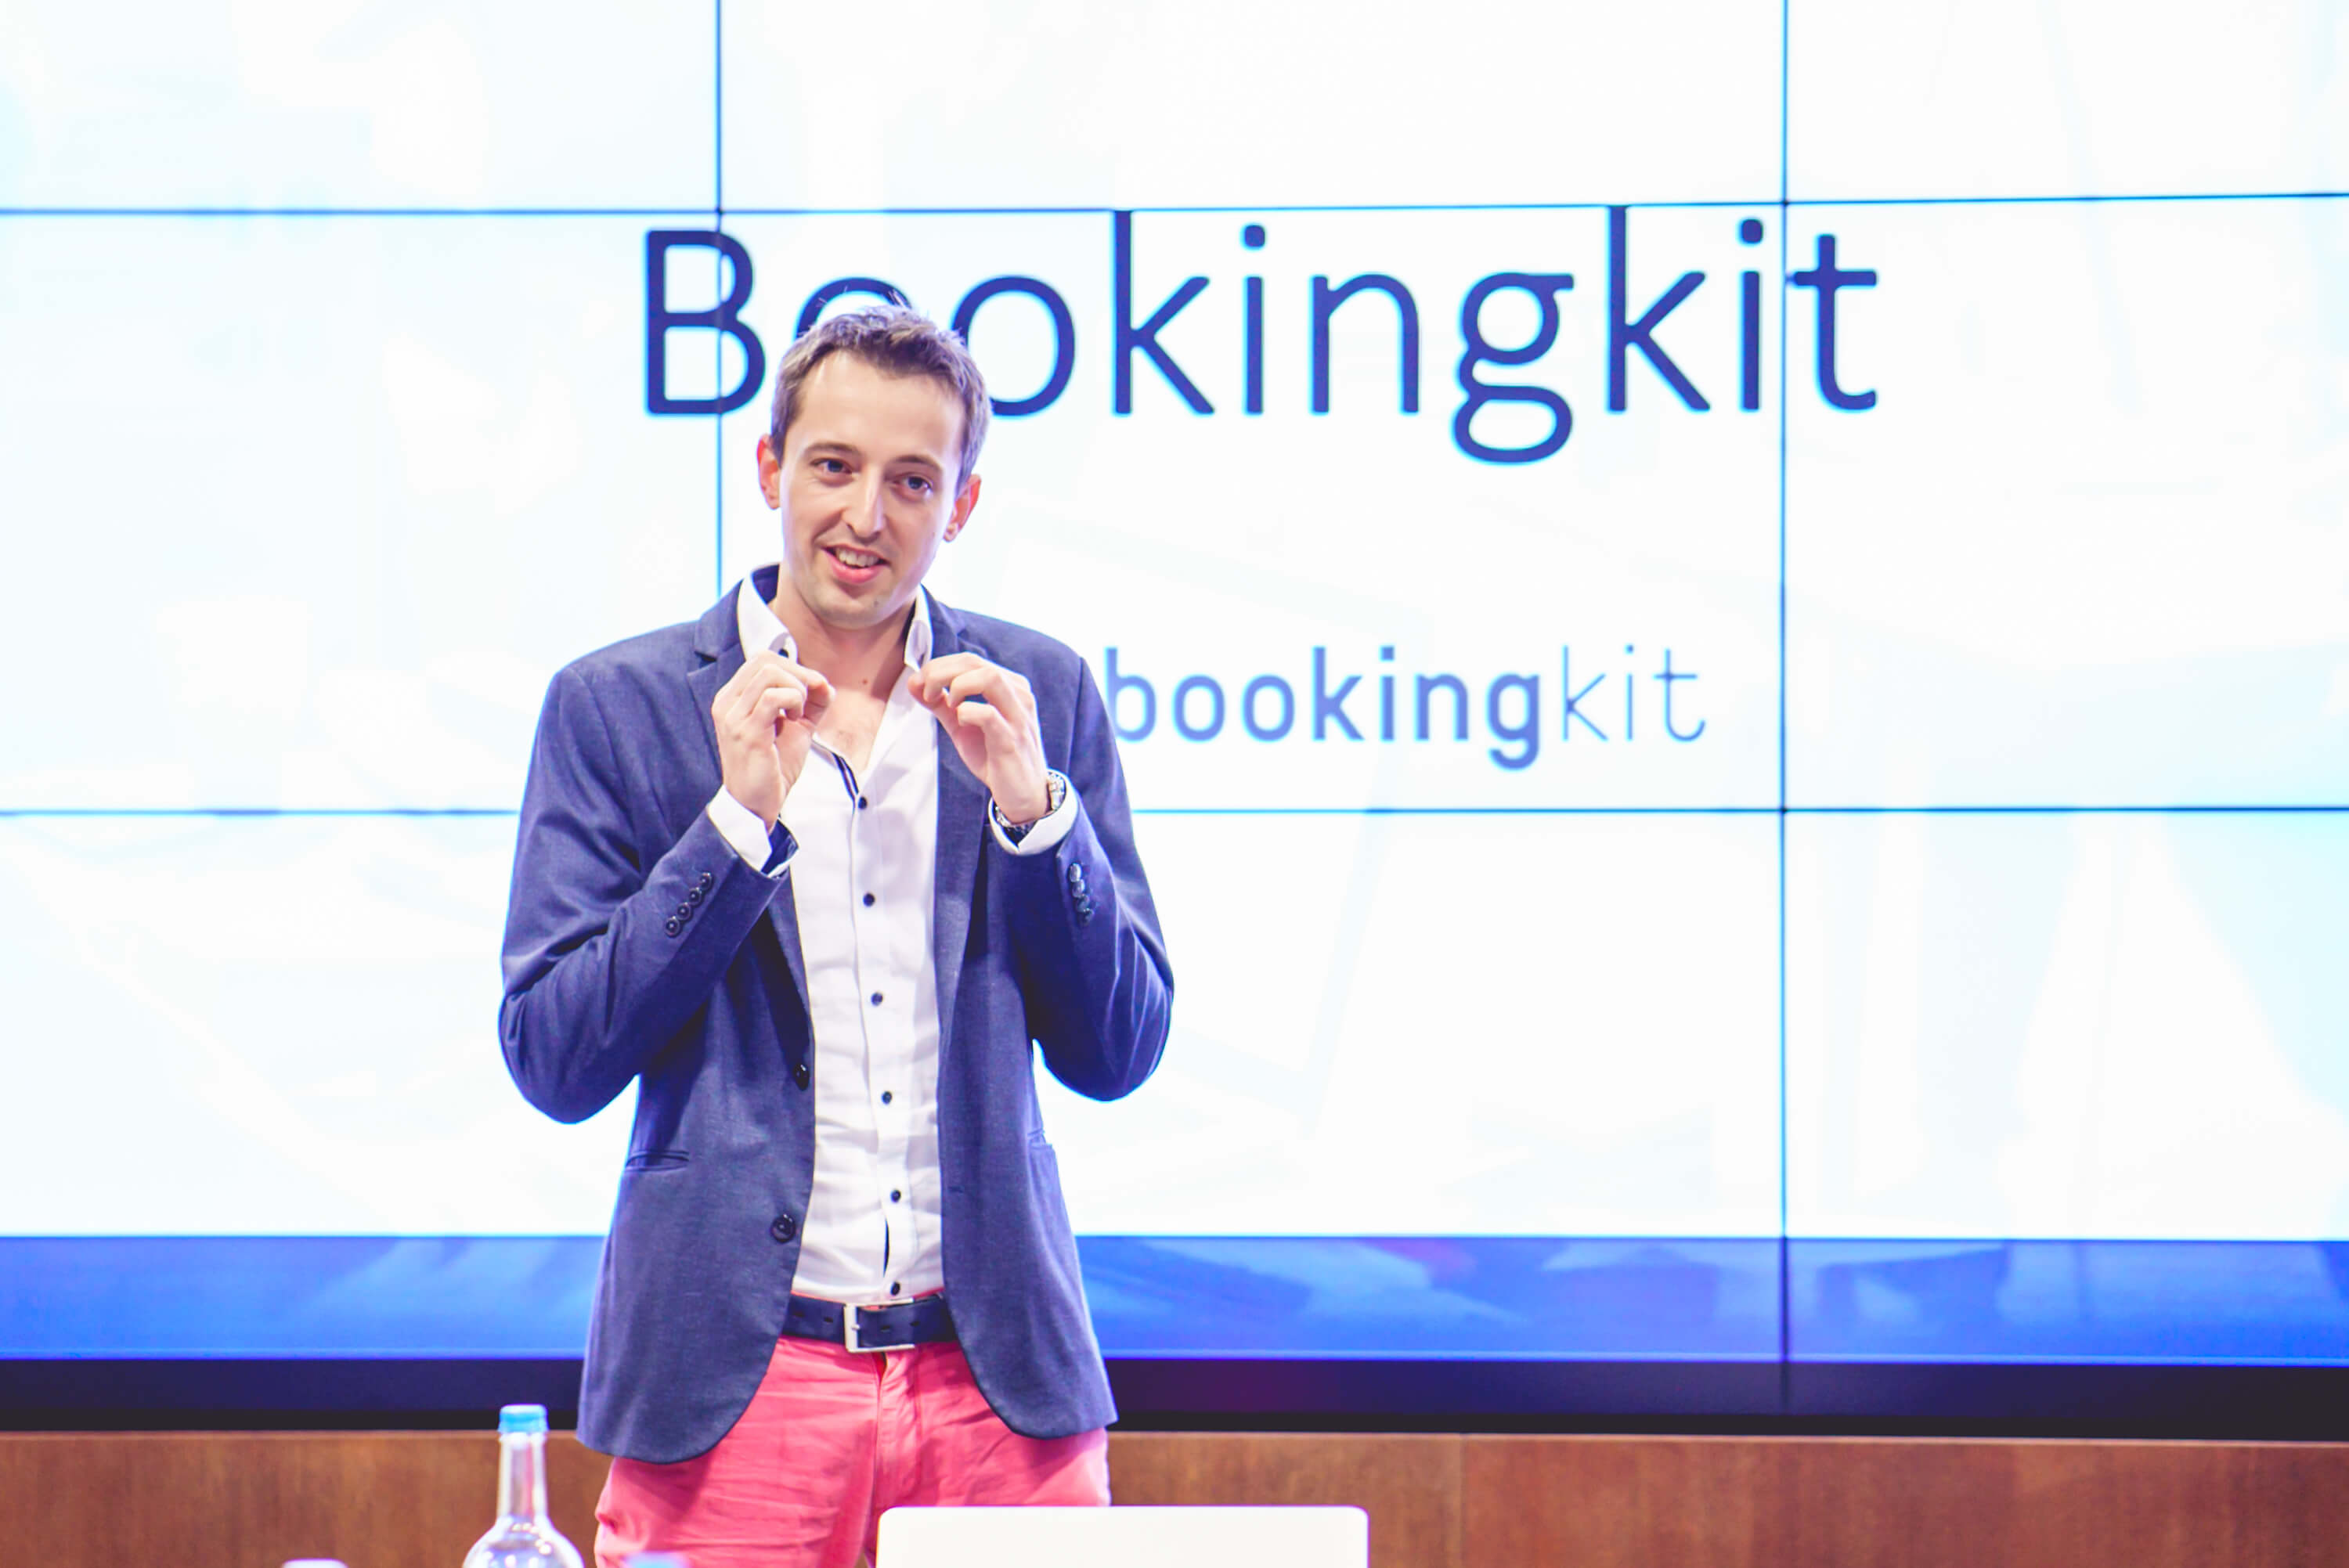 bookingkit-Award-Startup-of-the-Year-2017-VIR-TIC-Lukas-Hempel1-Travel Start-Up